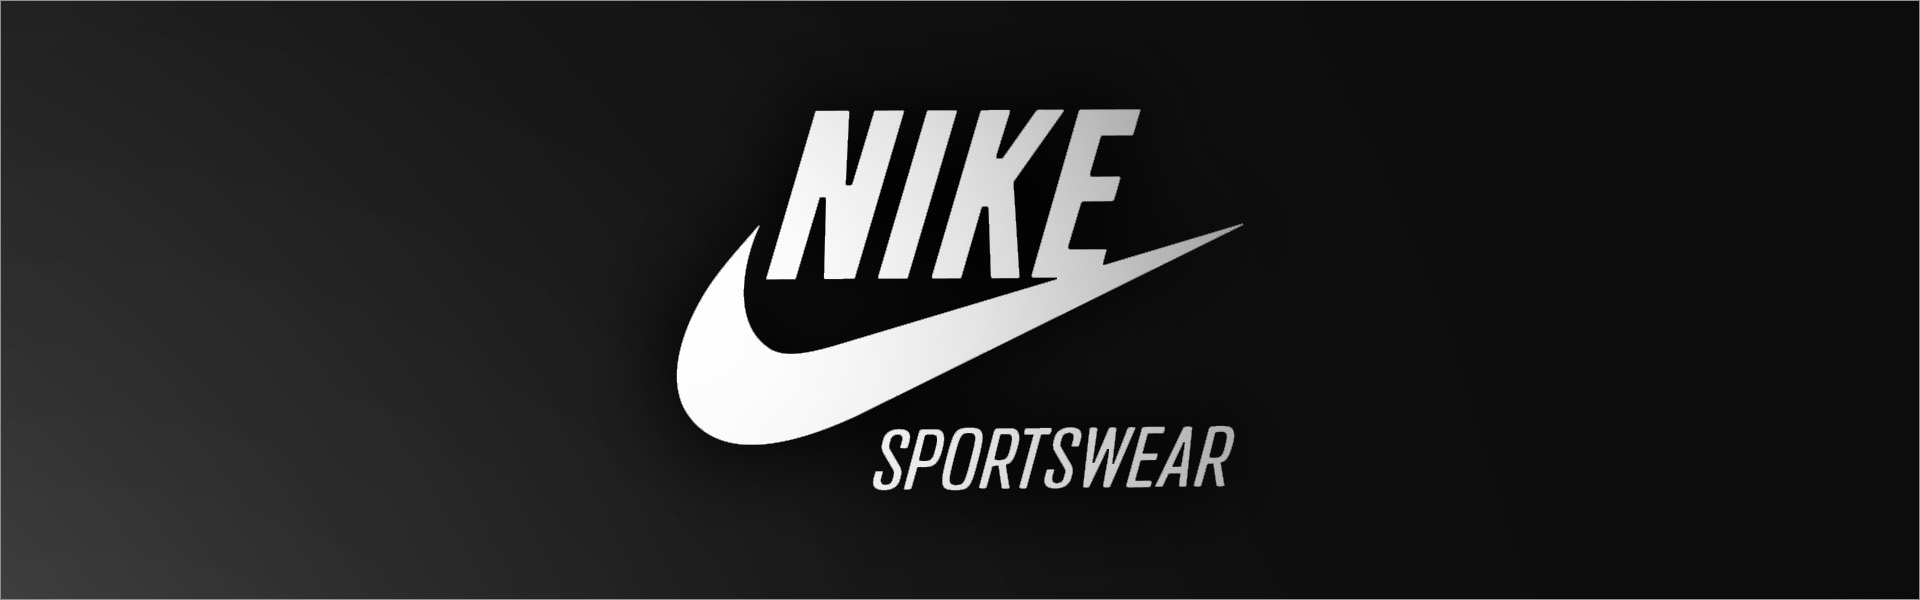 Повседневная обувь женская Nike Venture Runner W CK2948 105, разные цвета Nike Sportswear